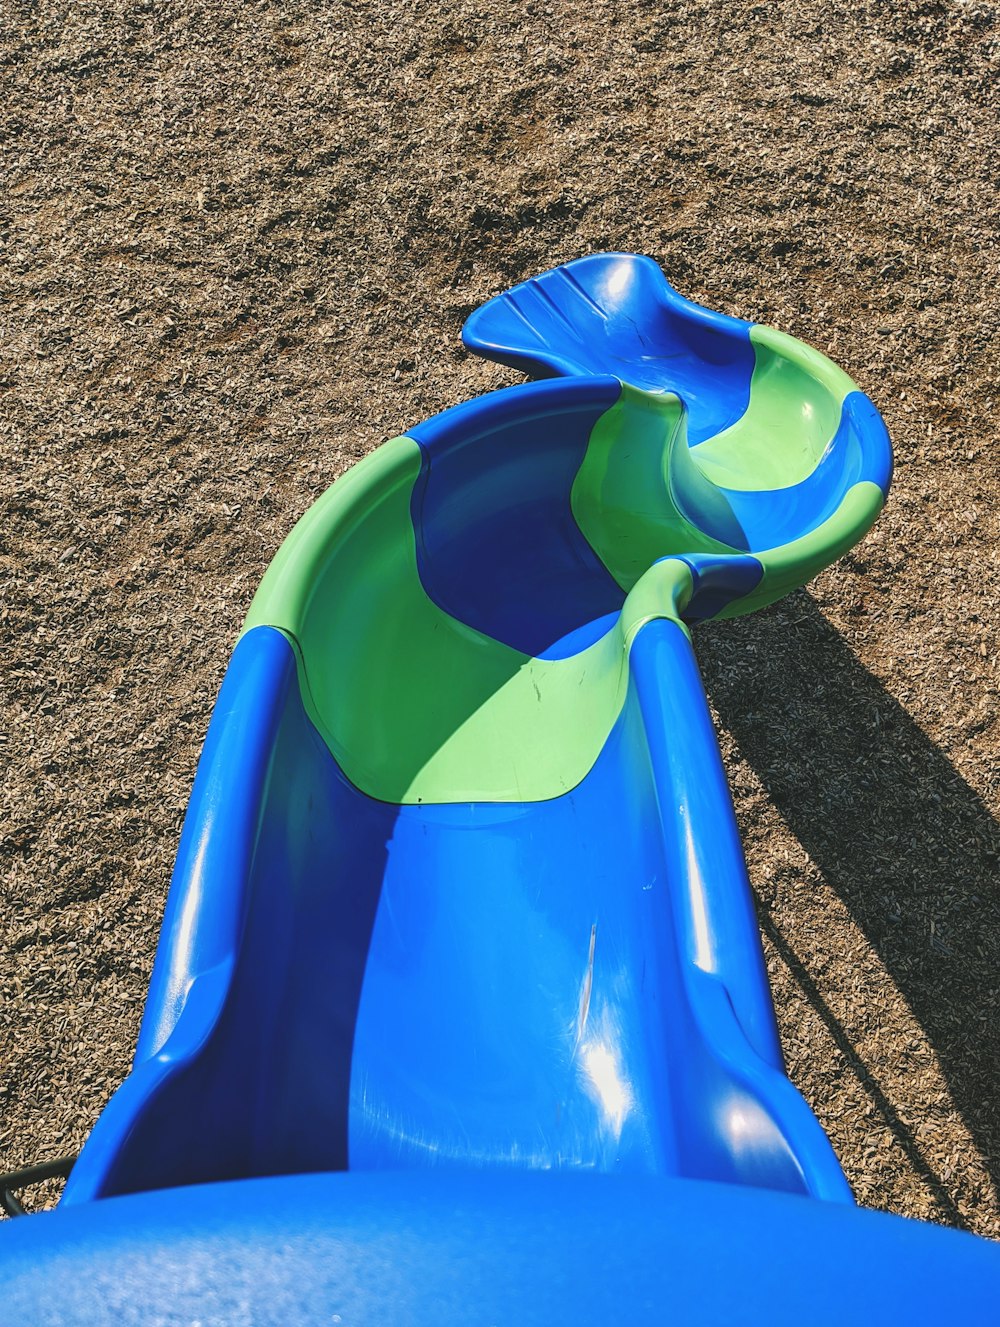 茶色の砂の上の青いプラスチックスライド